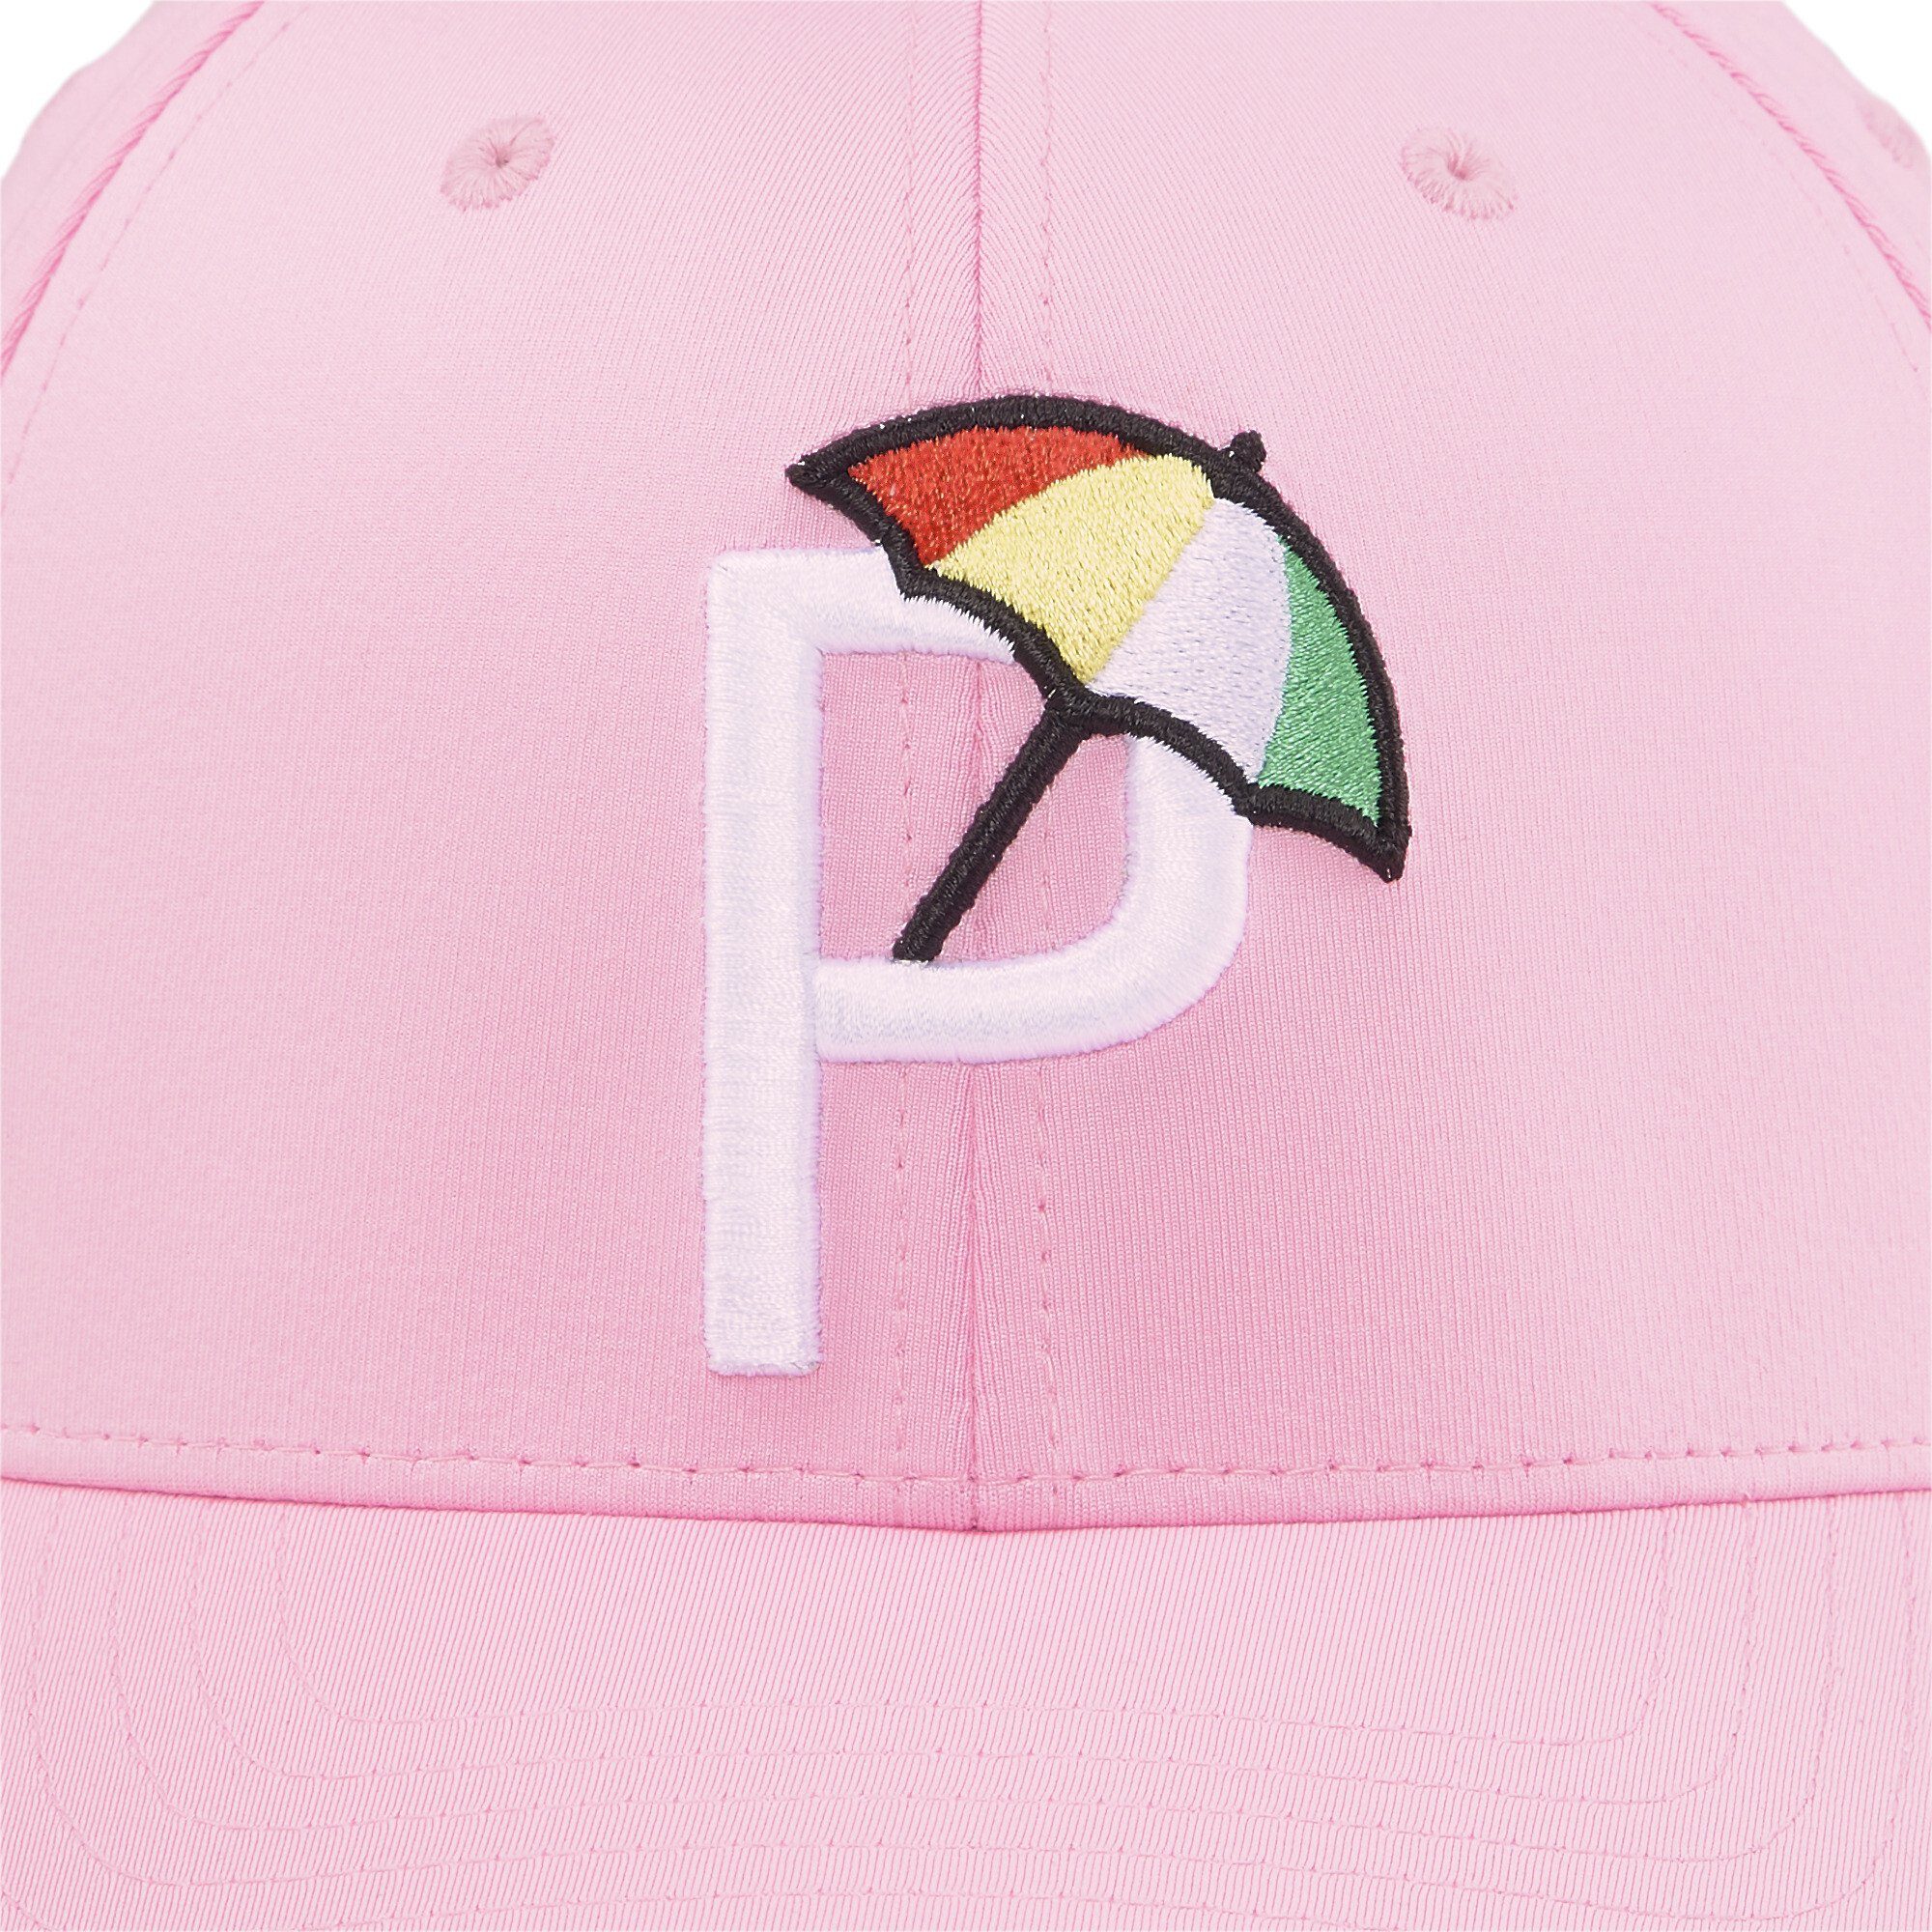 PUMA Flex Cap Palmer P Cap Golf Glow White Pink Herren Pale